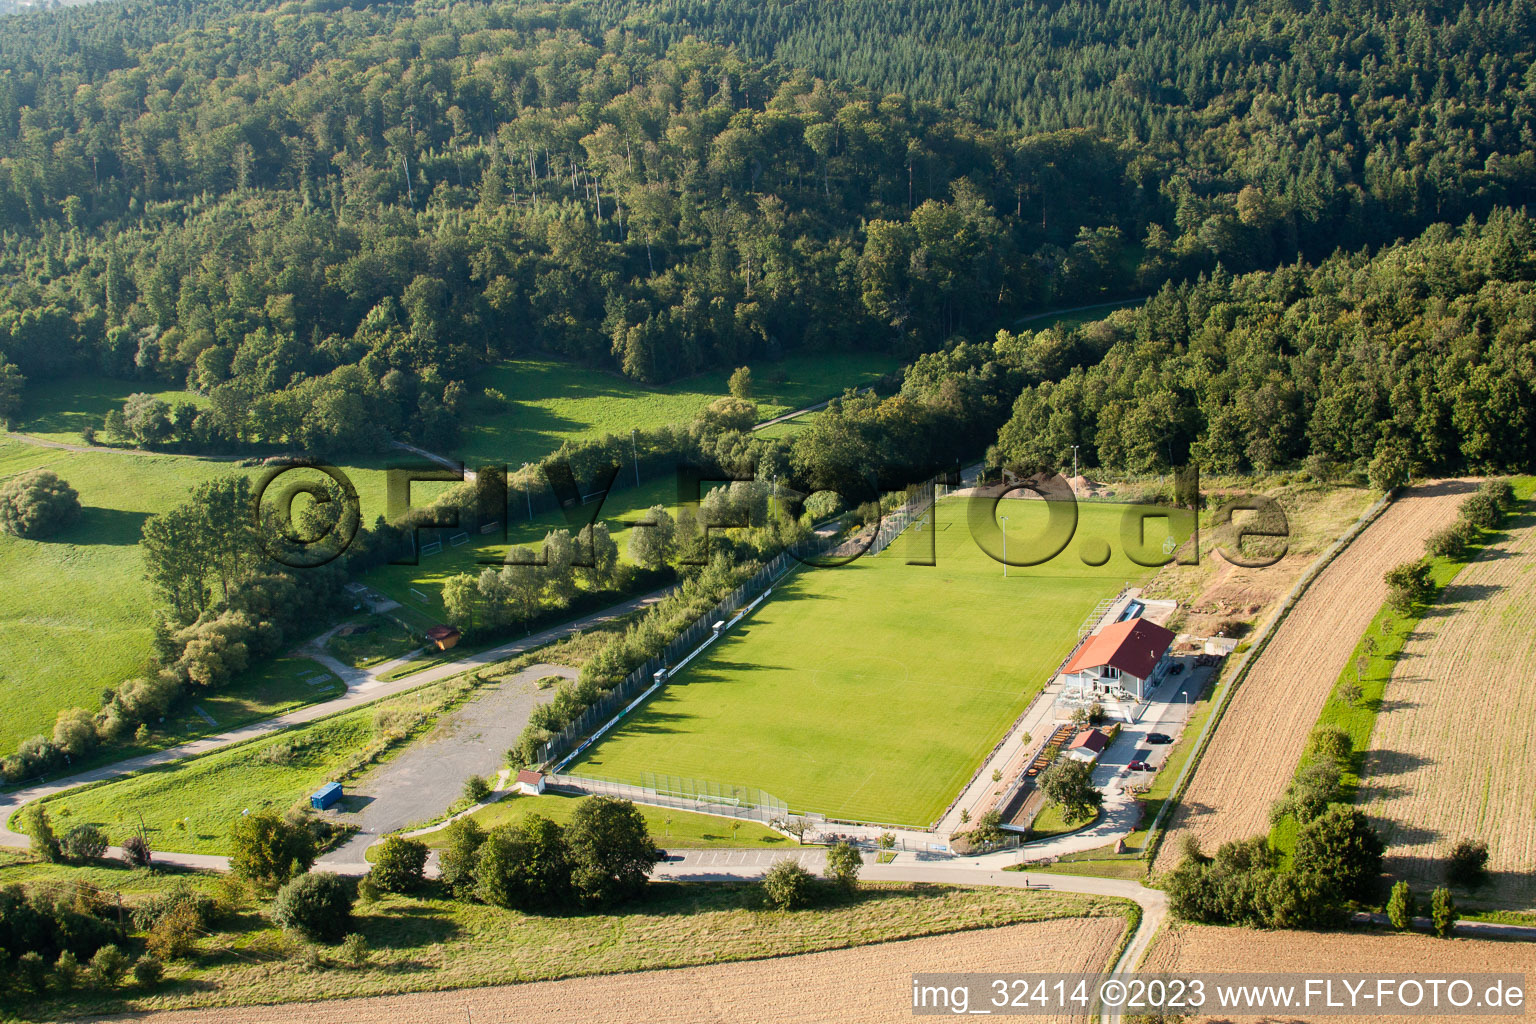 Stade Pneuhage à le quartier Auerbach in Karlsbad dans le département Bade-Wurtemberg, Allemagne du point de vue du drone